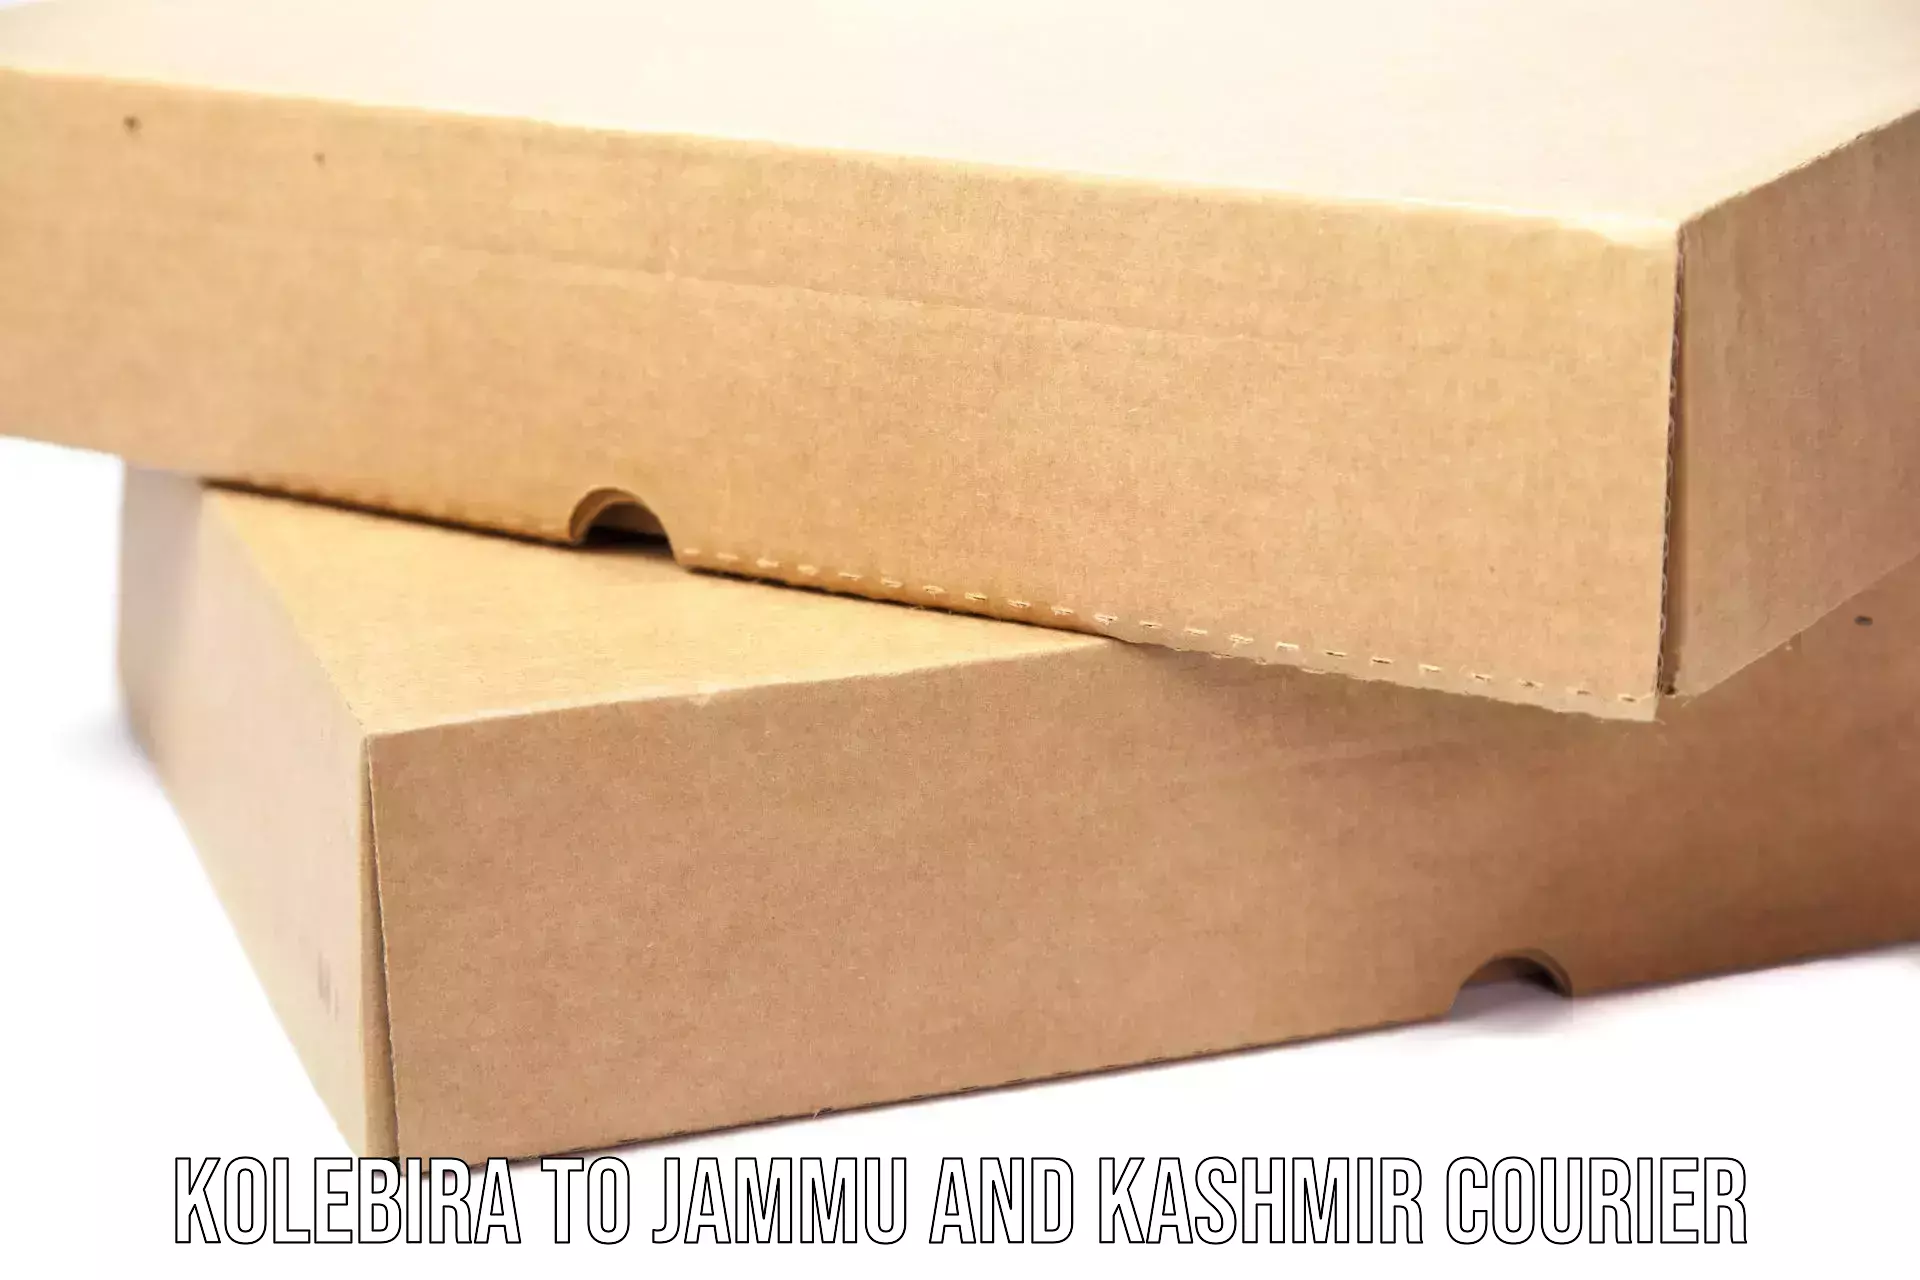 Express courier facilities Kolebira to Jammu and Kashmir